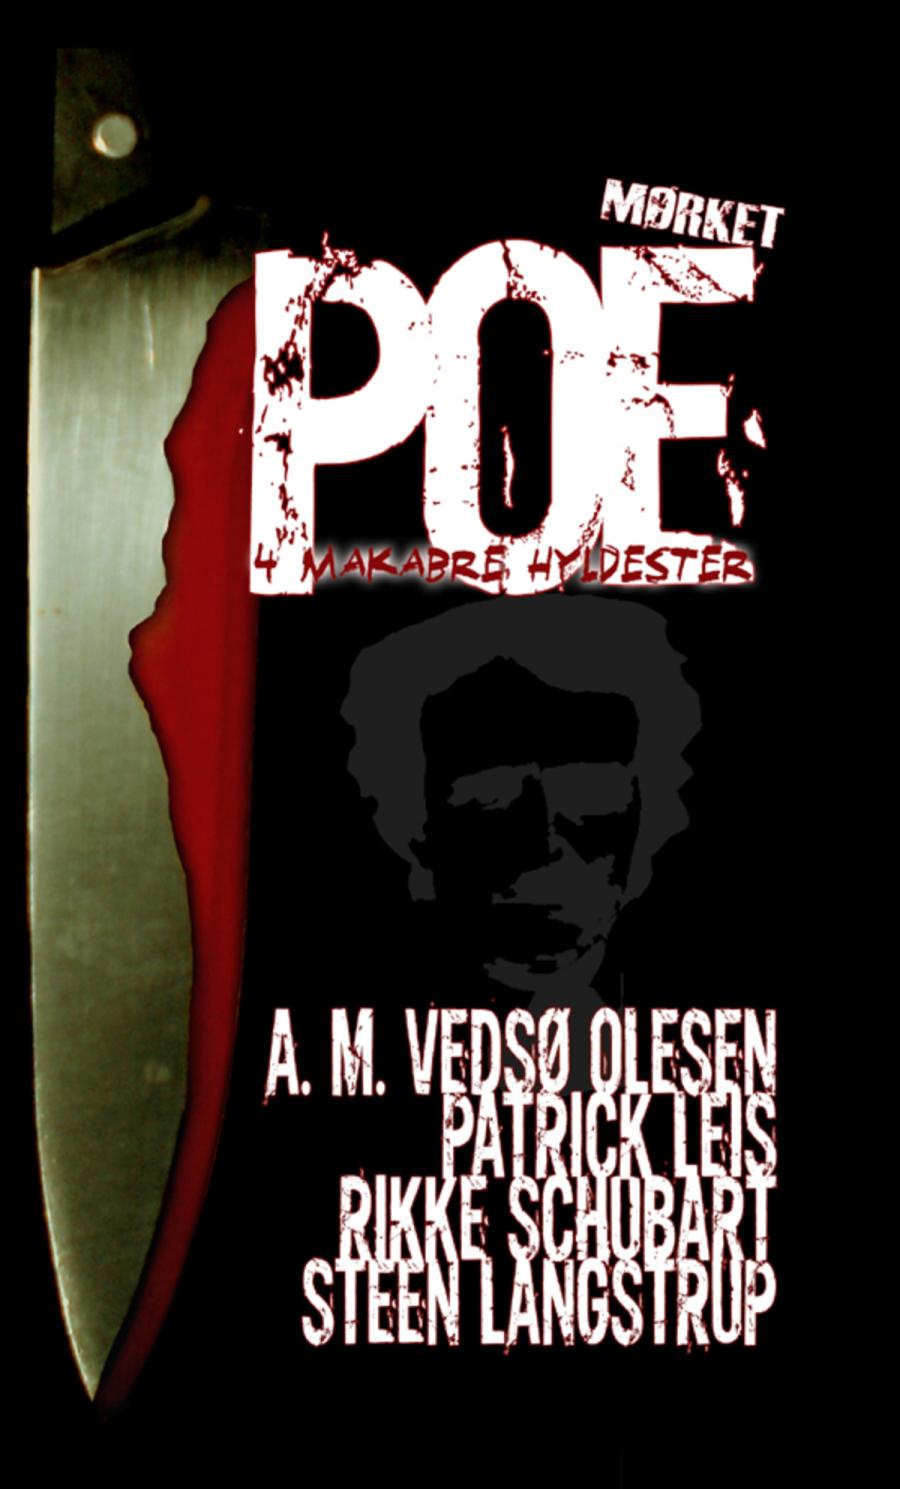 Poe - 4 makabre hyldester